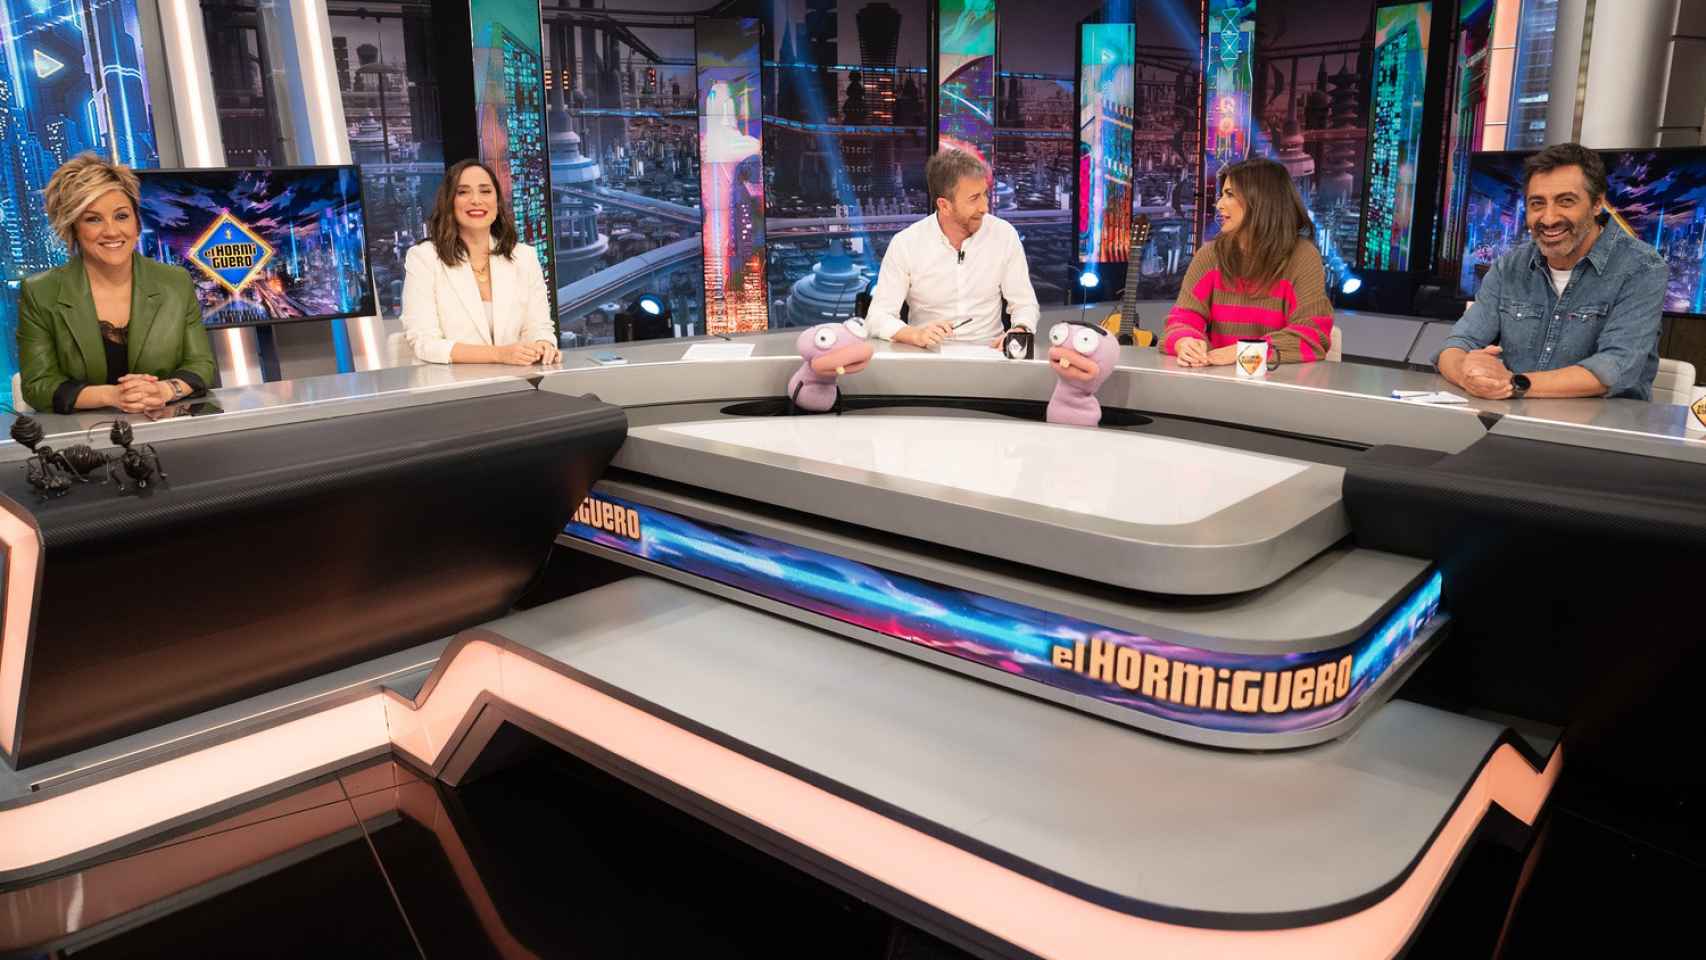 Cristina Pardo, Tamara Falcó, Nuria y Juan del Val integran la tertulia política de los jueves de 'El Hormiguero'.